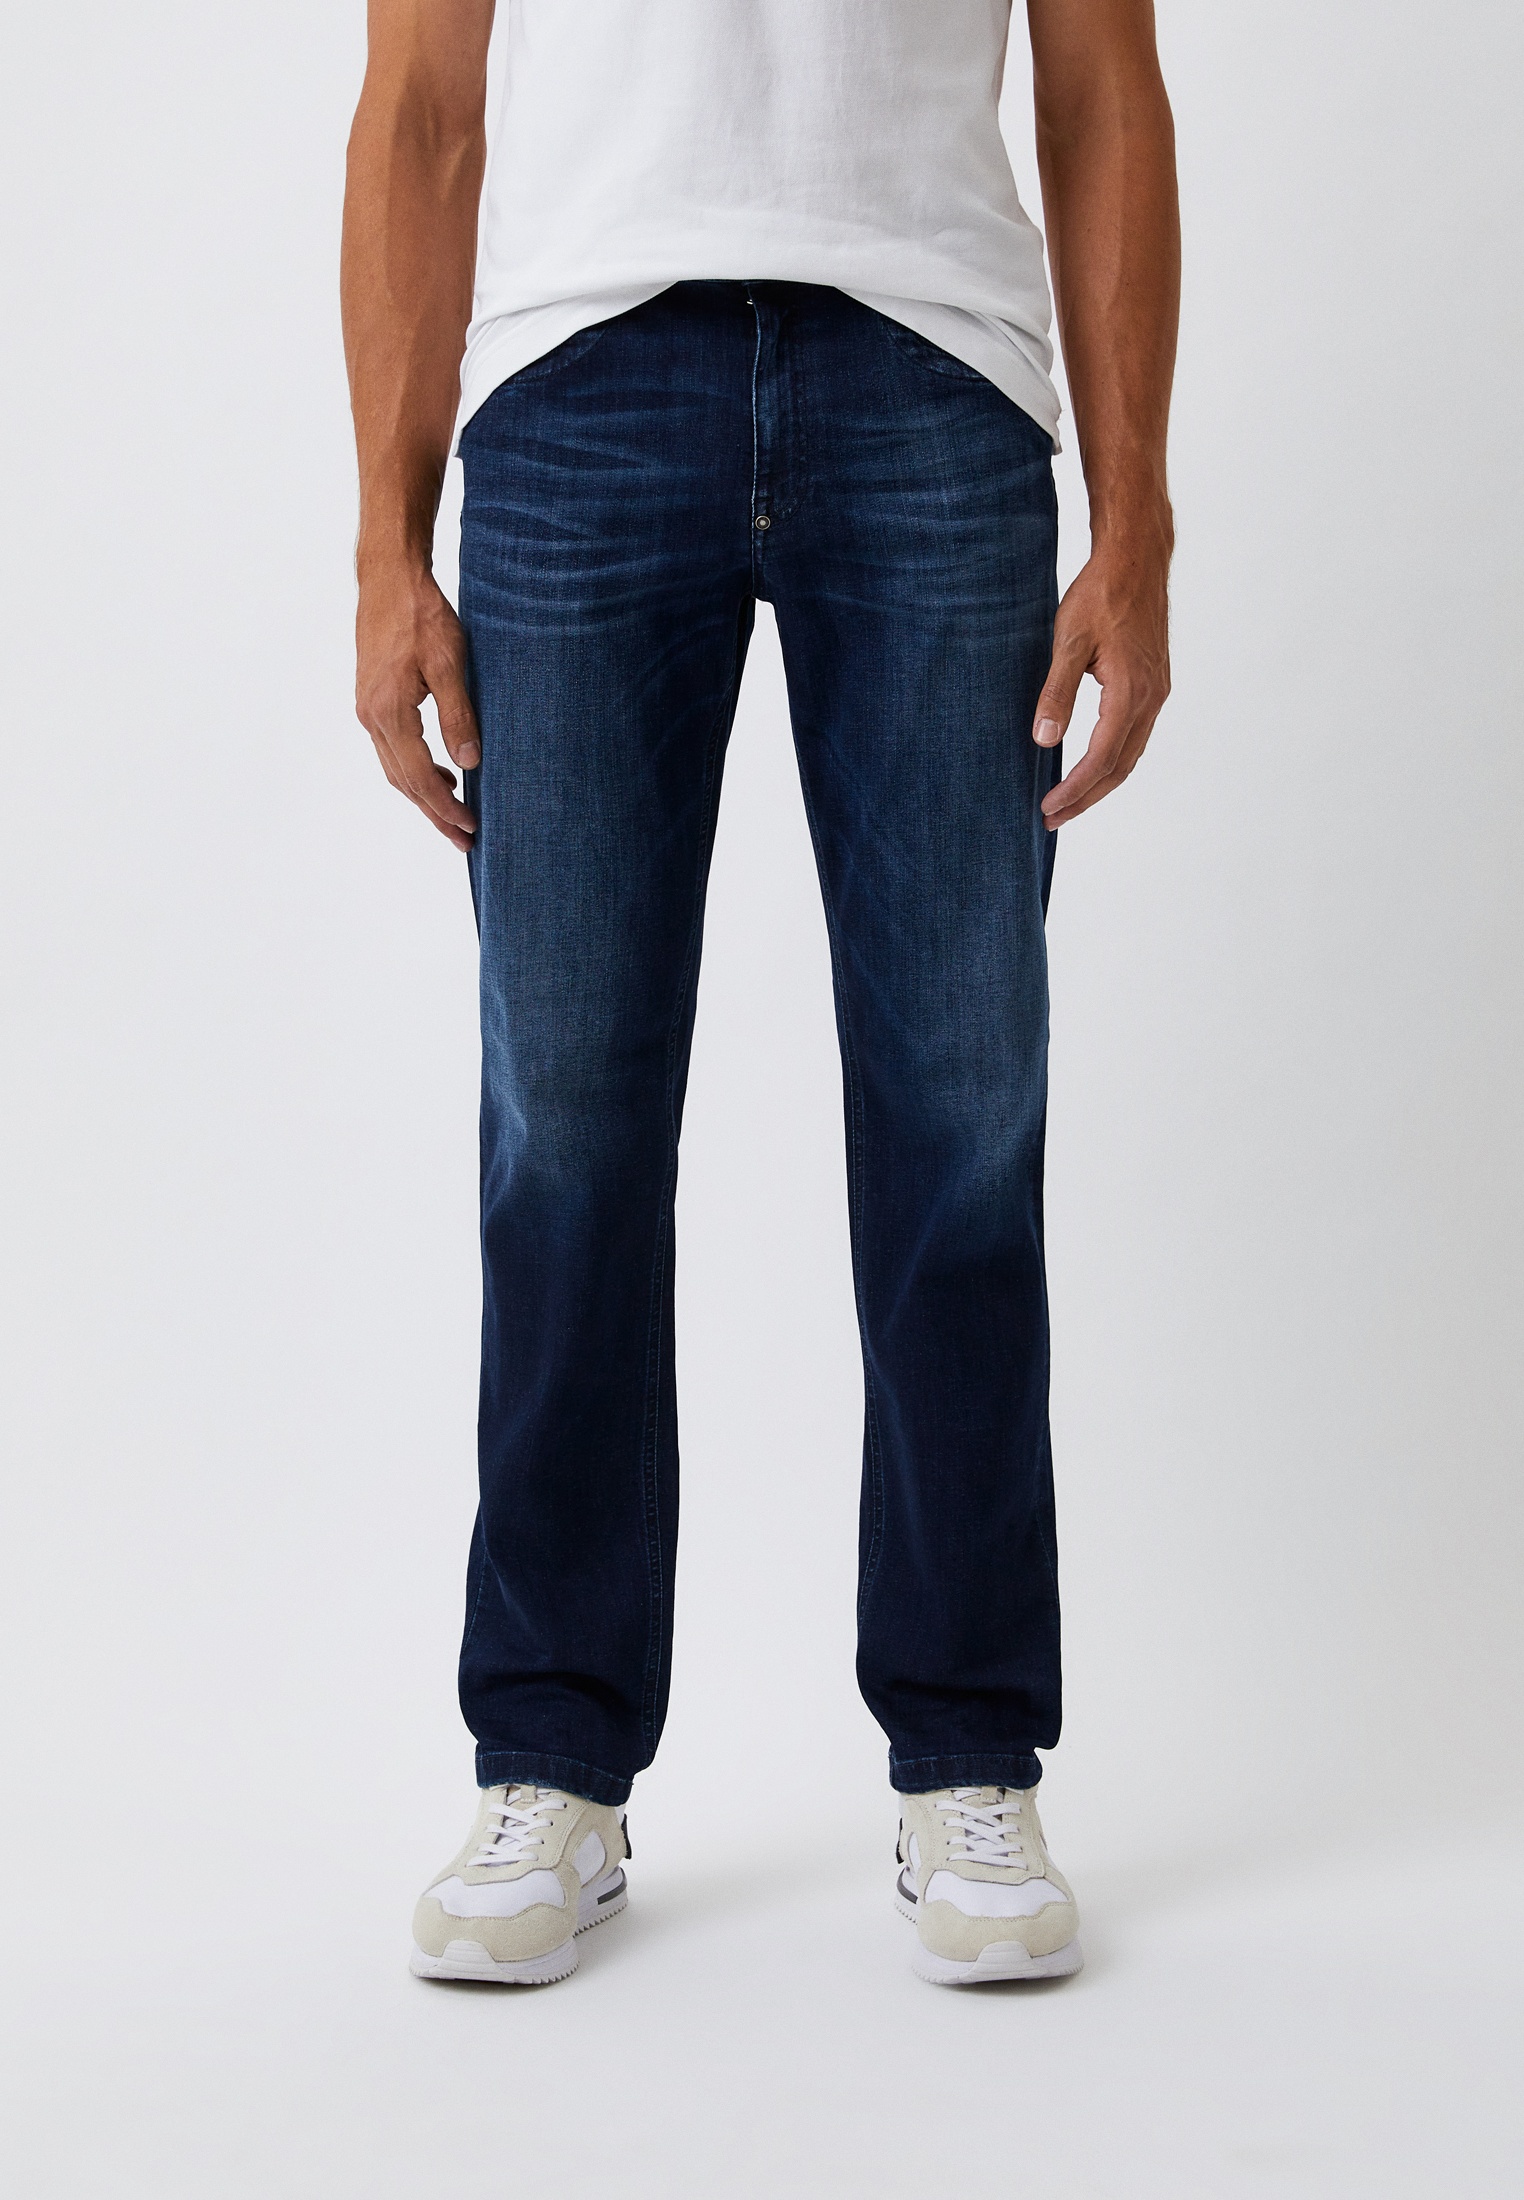 Мужские прямые джинсы Bikkembergs (Биккембергс) C Q 112 01 S 3511: изображение 11